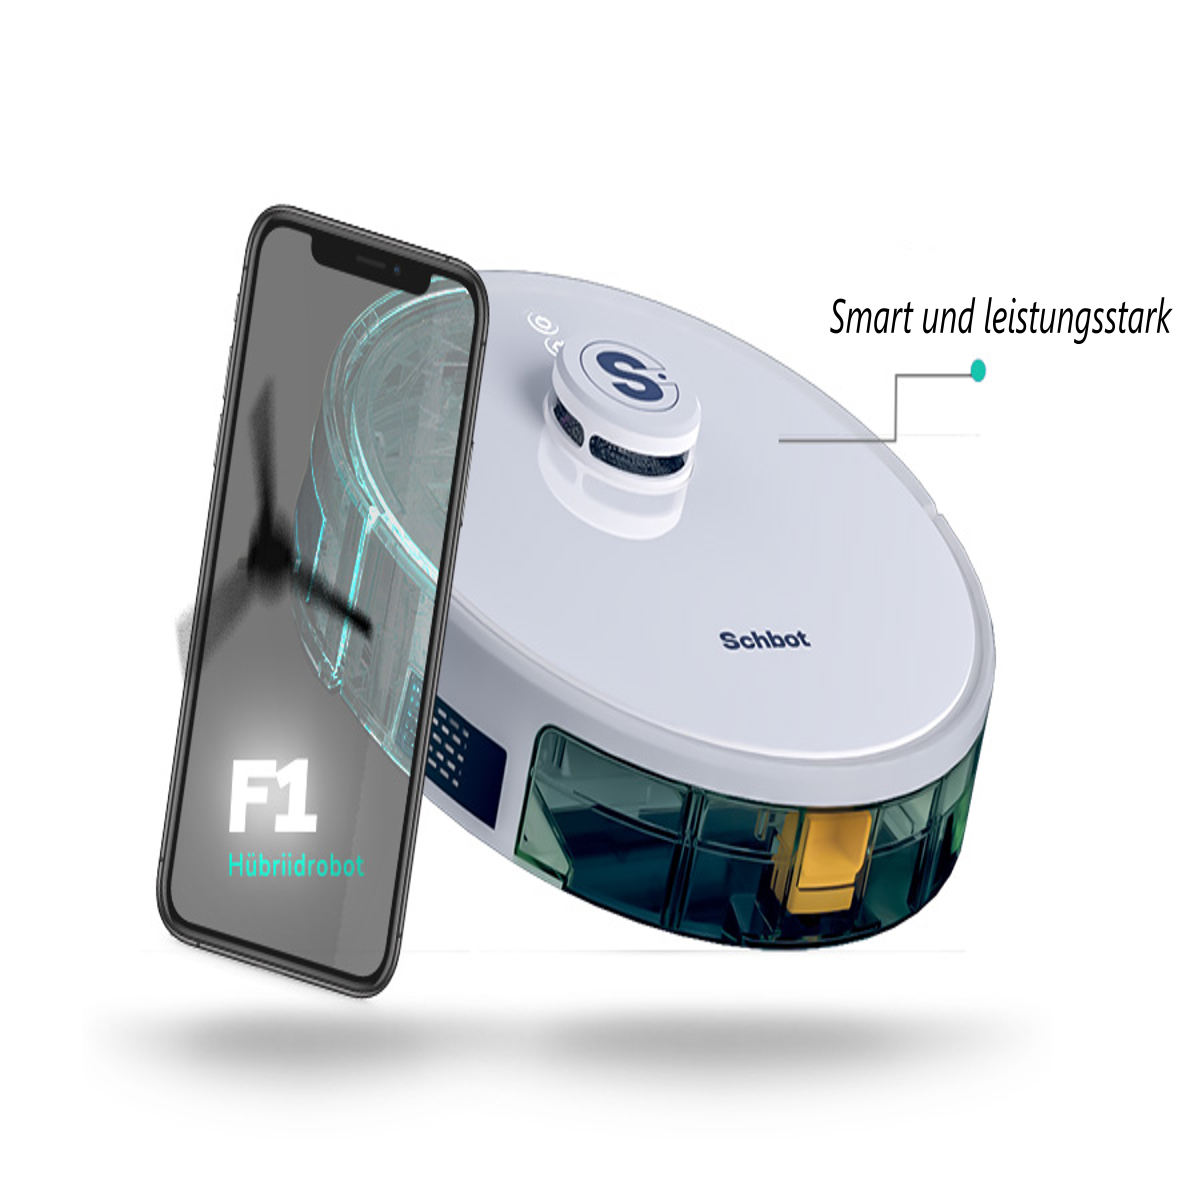 Saugroboter mit connection SCHBOT Roboterstaubsauger F1-Weiß App und Wischfunktion